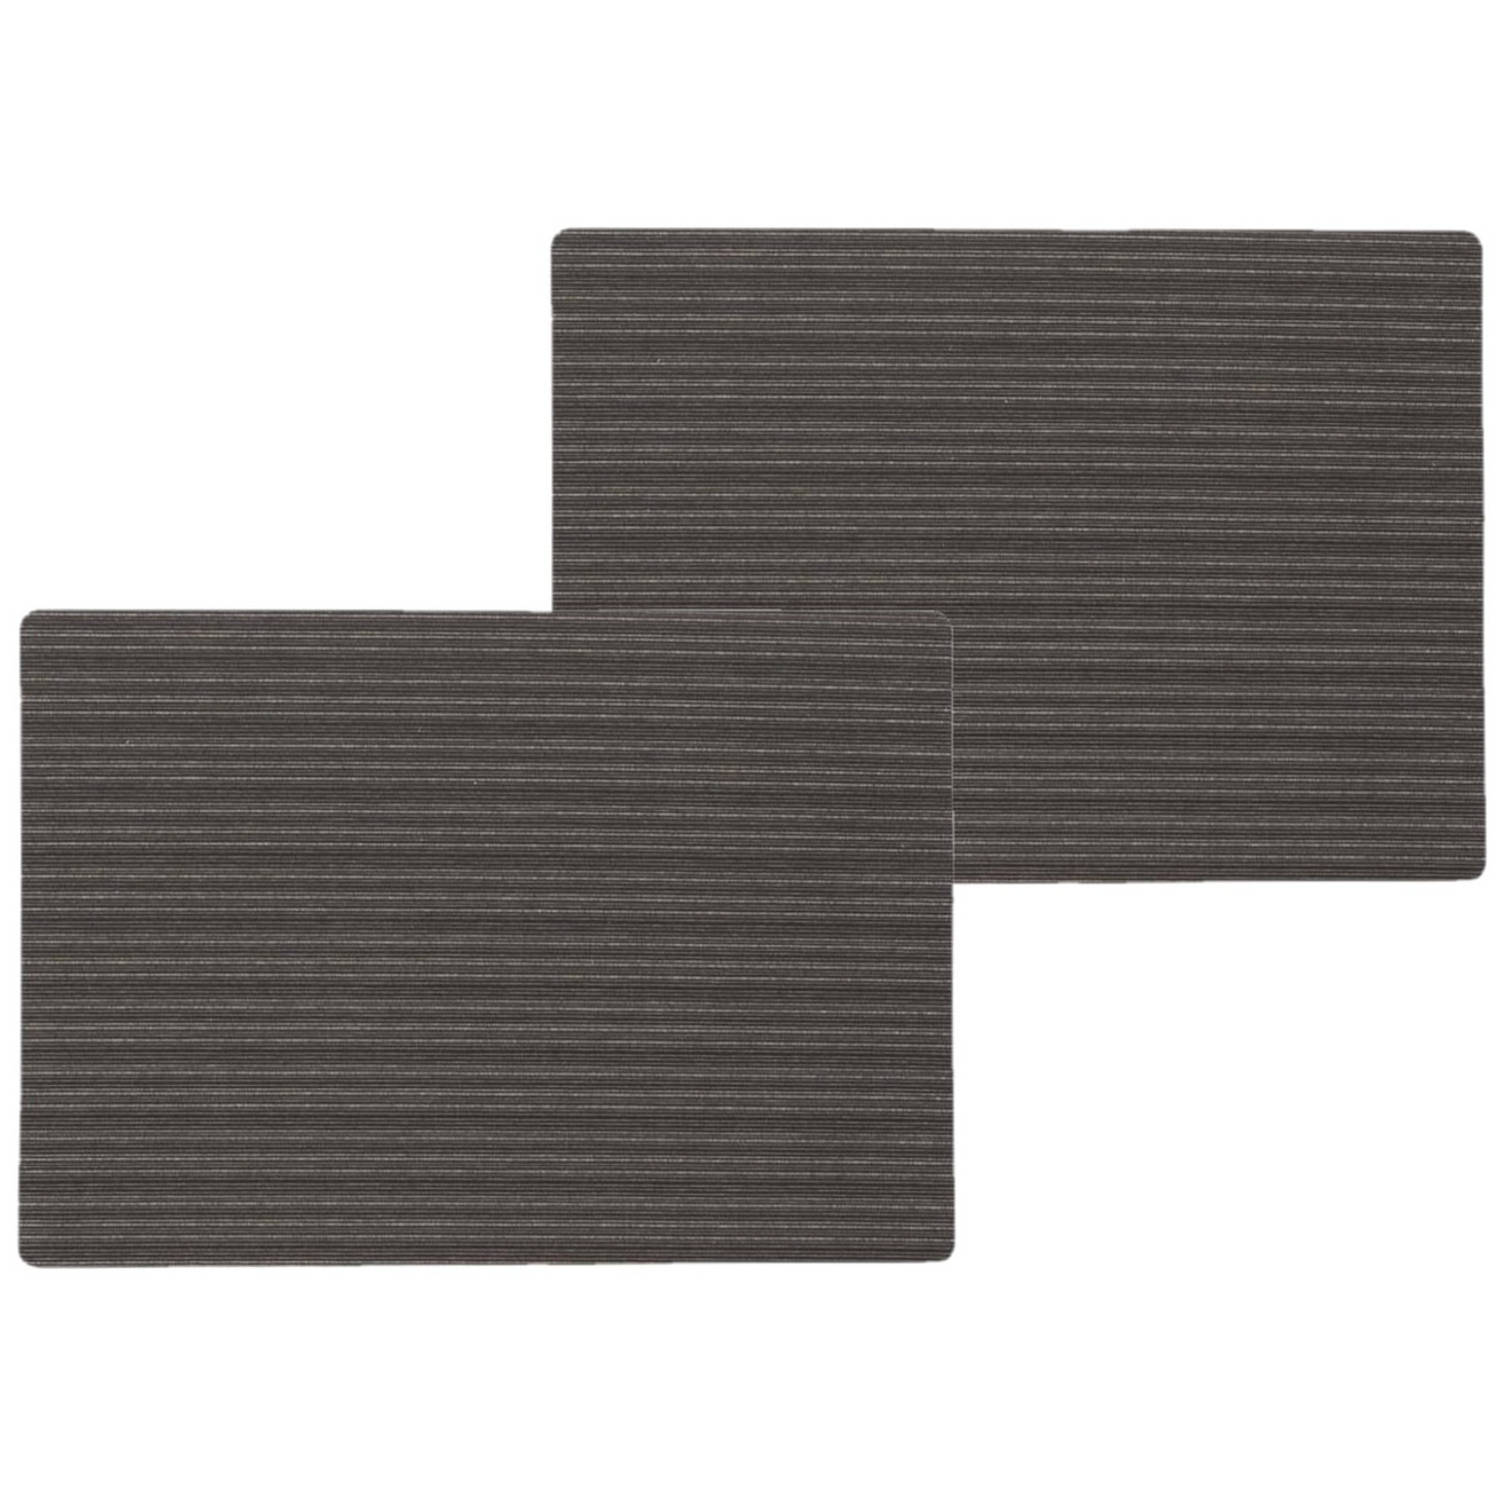 6x stuks stevige luxe Tafel placemats Lines zwart 30 x 43 cm - Placemats